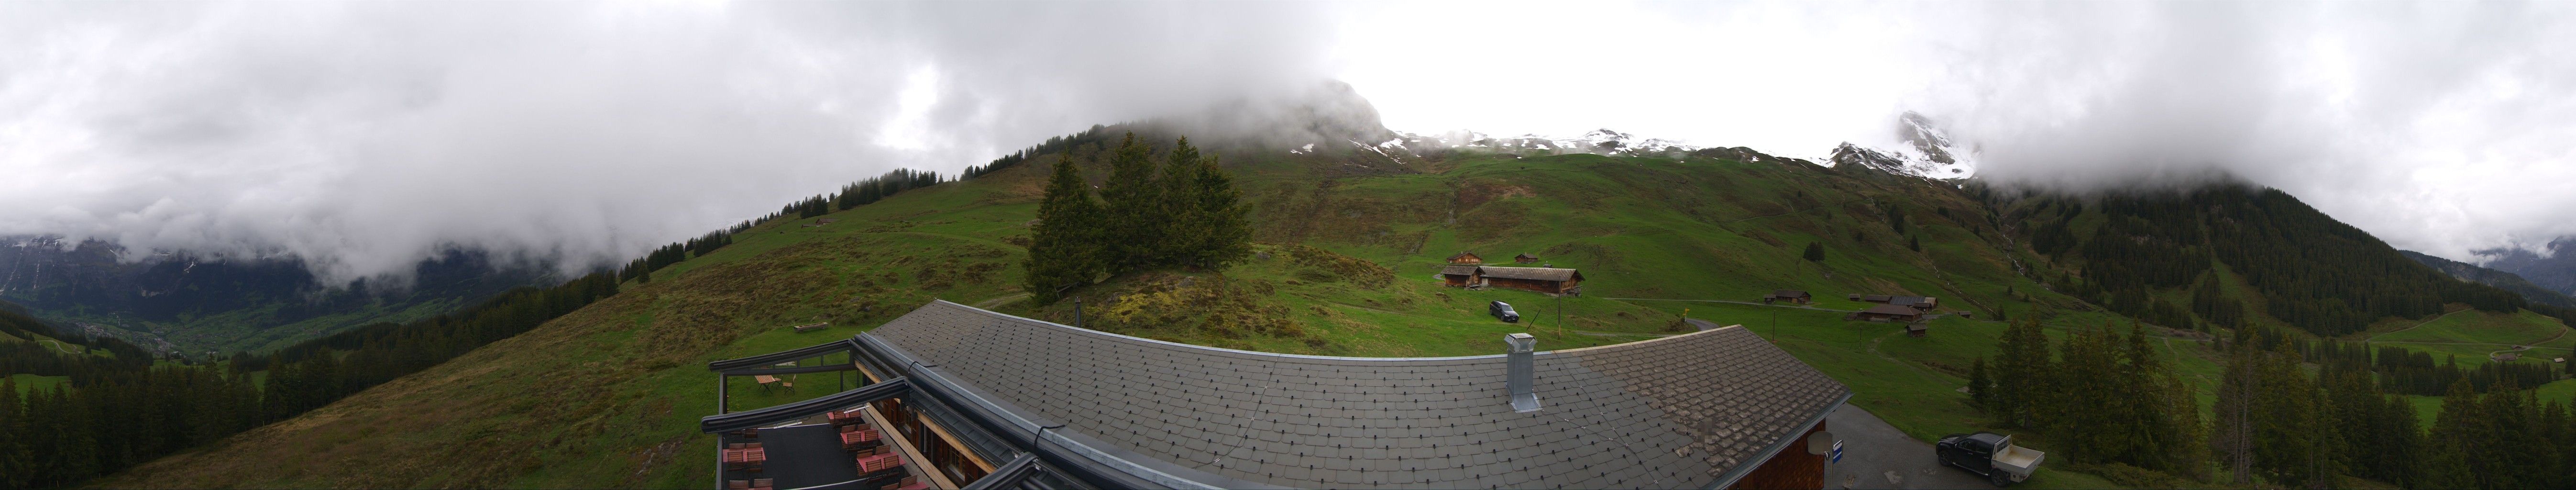 Grindelwald: Tschuggen - Eiger - Wetterhorn - Jungfrau Region - Mönch - Schreckhorn - Gross Fiescherhorn - Silberhorn